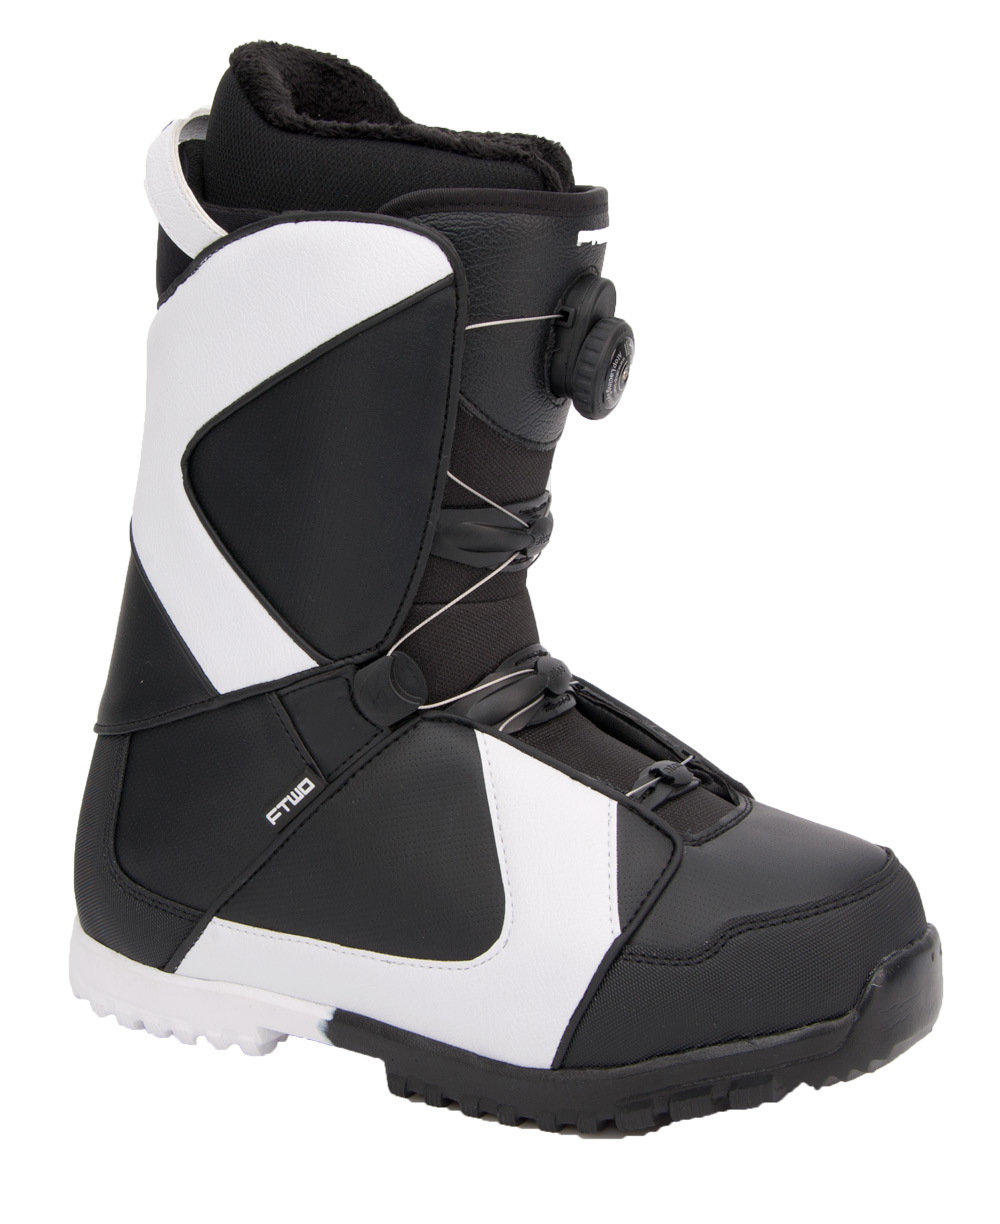 Ботинки сноубордические F2 Air размер 29,0 black/black 